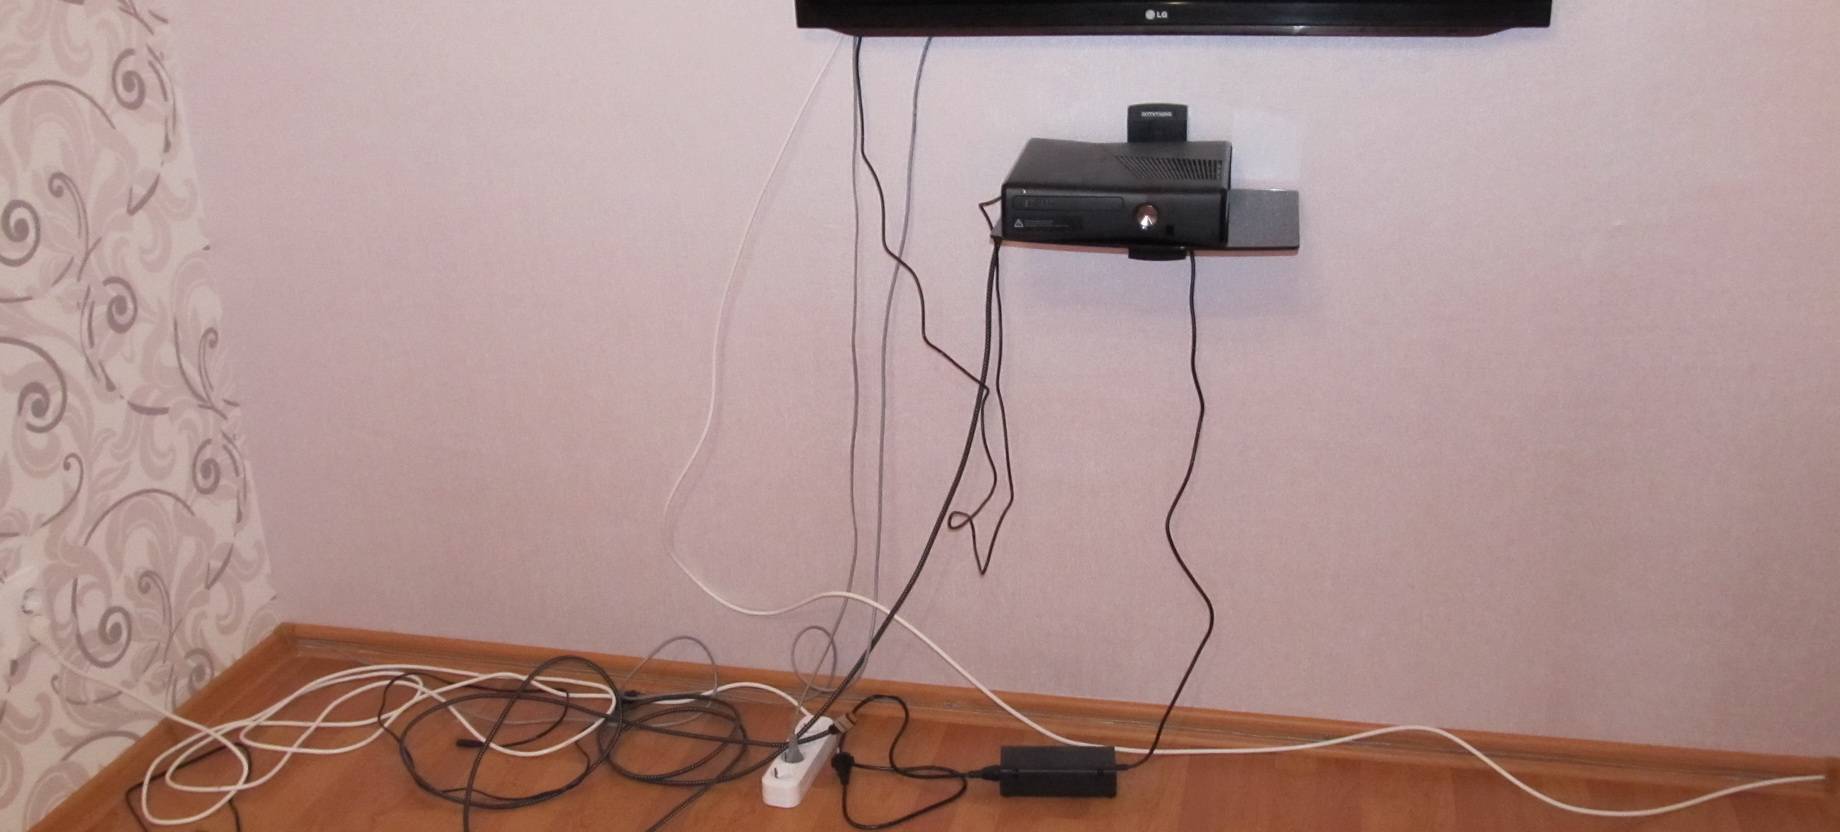 Прячем провода от телевизора в стене: советы с фото и видео